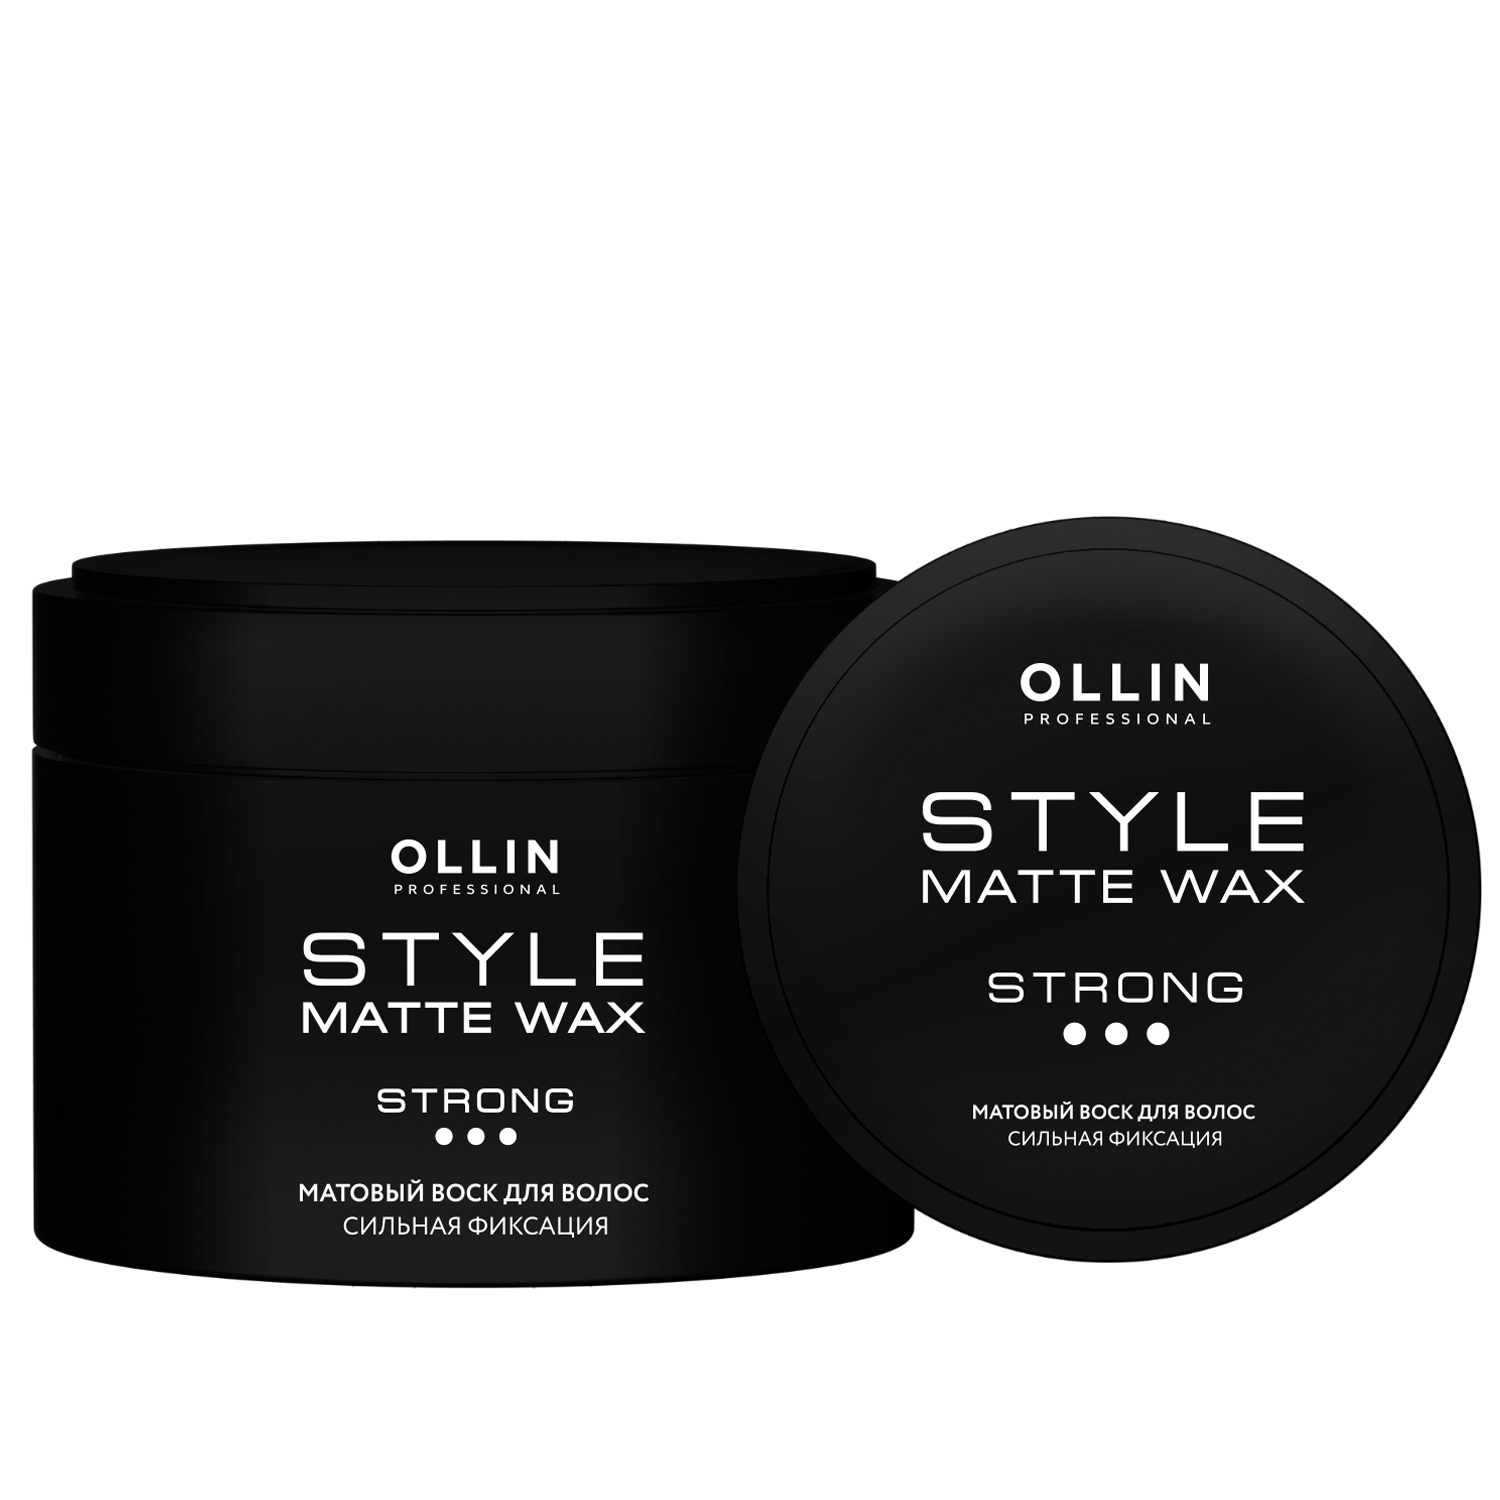 Ollin Professional Матовый воск для волос сильной фиксации, 50 г (Ollin Professional, Style) ollin professional матовый воск для волос сильной фиксации 50 г ollin professional style